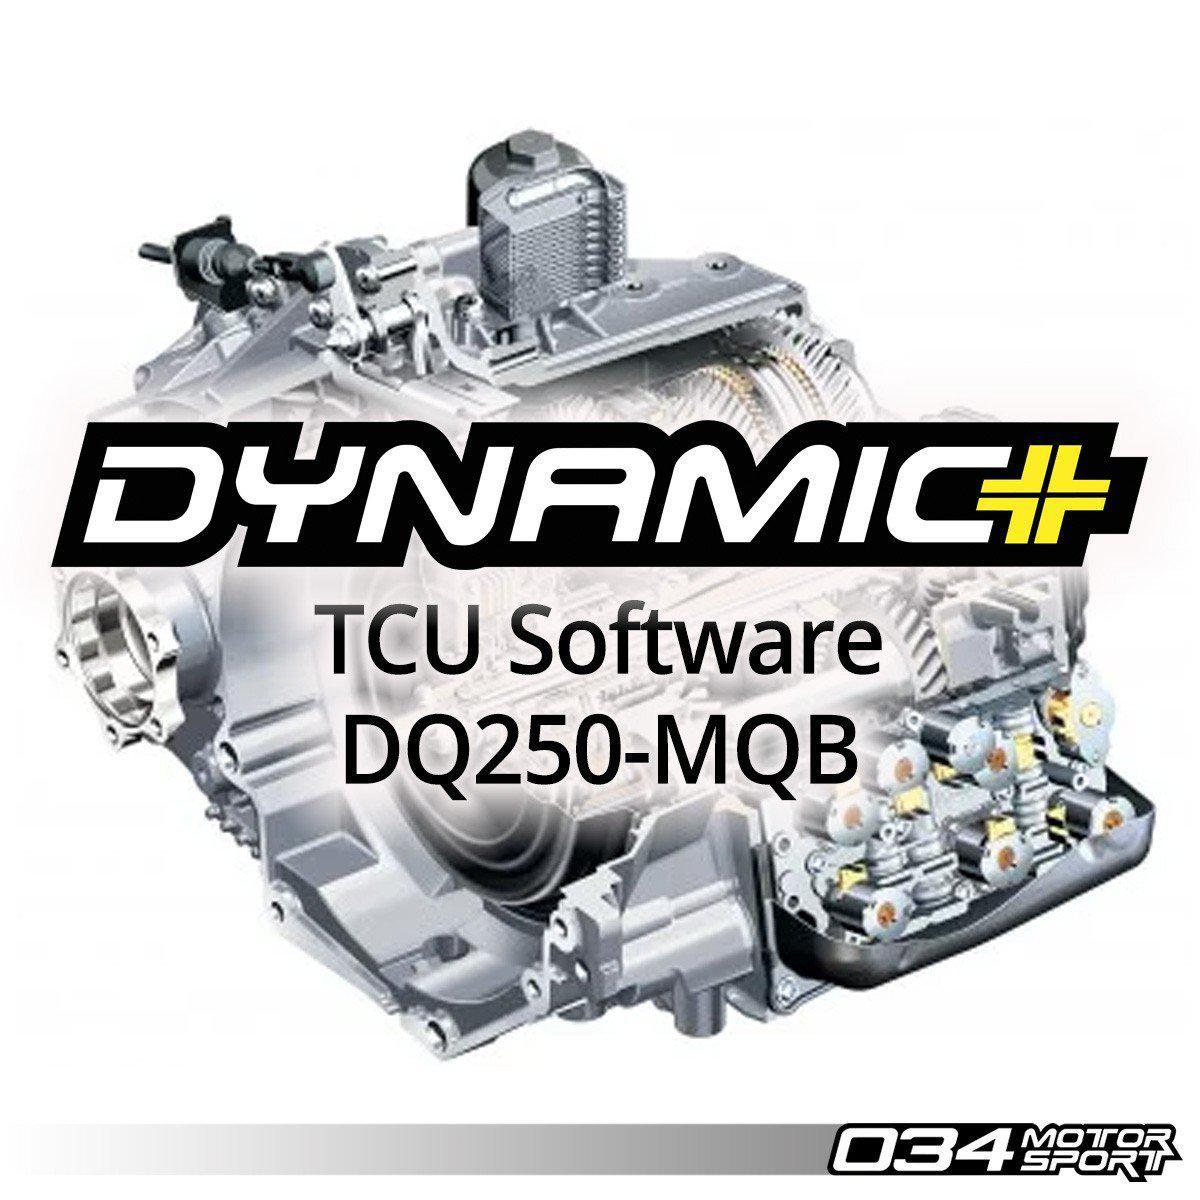 Dsg Software Upgrade For MKVII Volkswagen & 8S/8V Audi, Dq250 Transmission-A Little Tuning Co